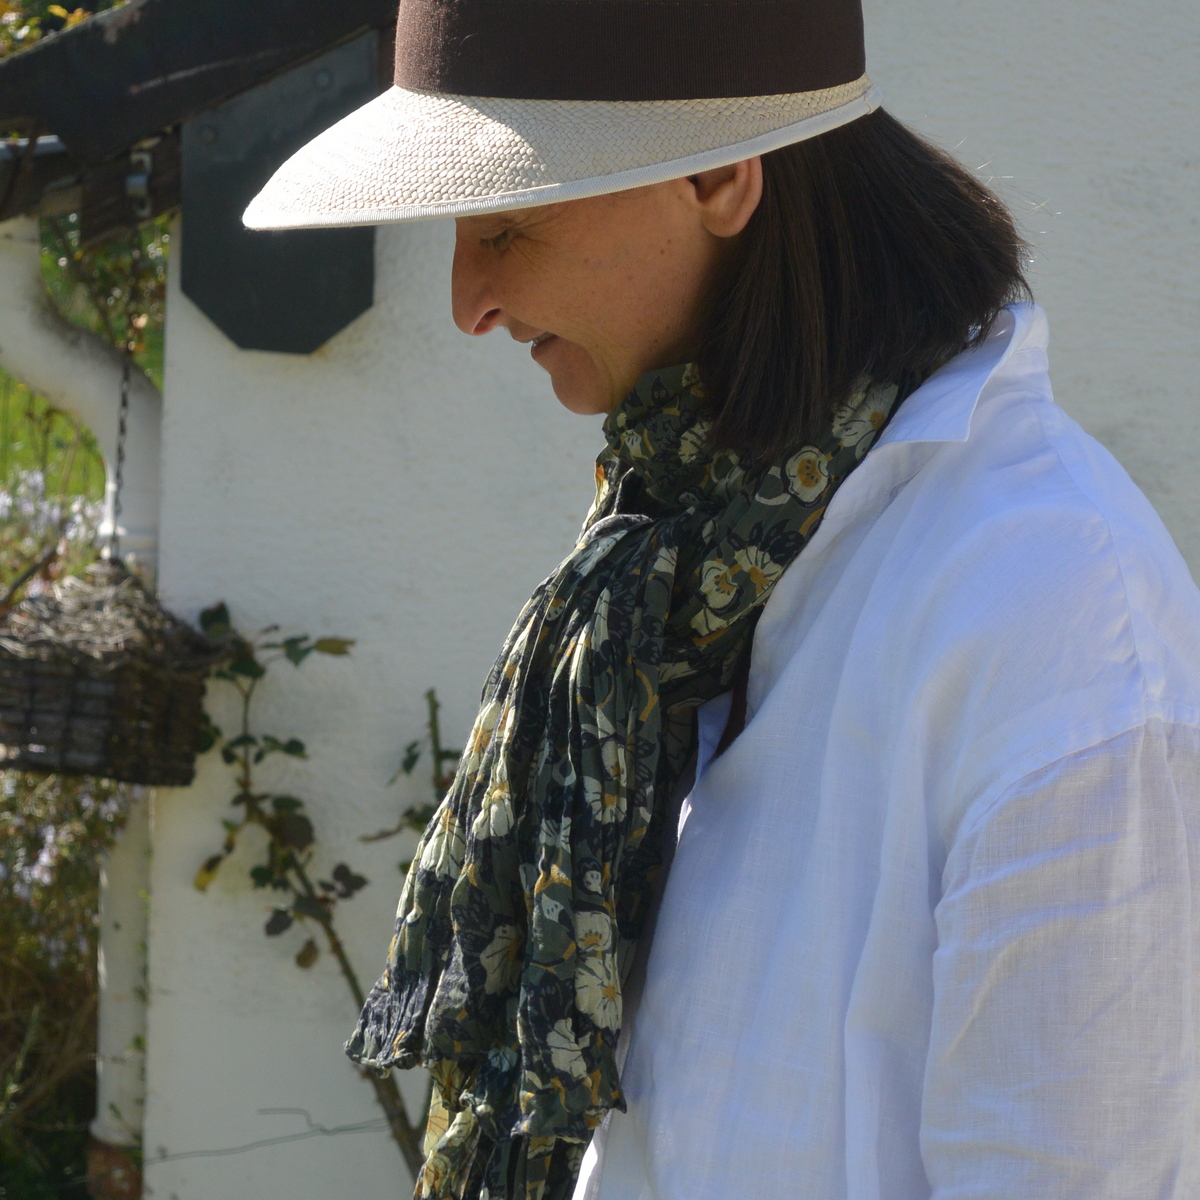 foulard zen ethic grande-etole-kyoto-voile-de-coton-110x180cm une idee cadeau chez ugo et lea    (12)